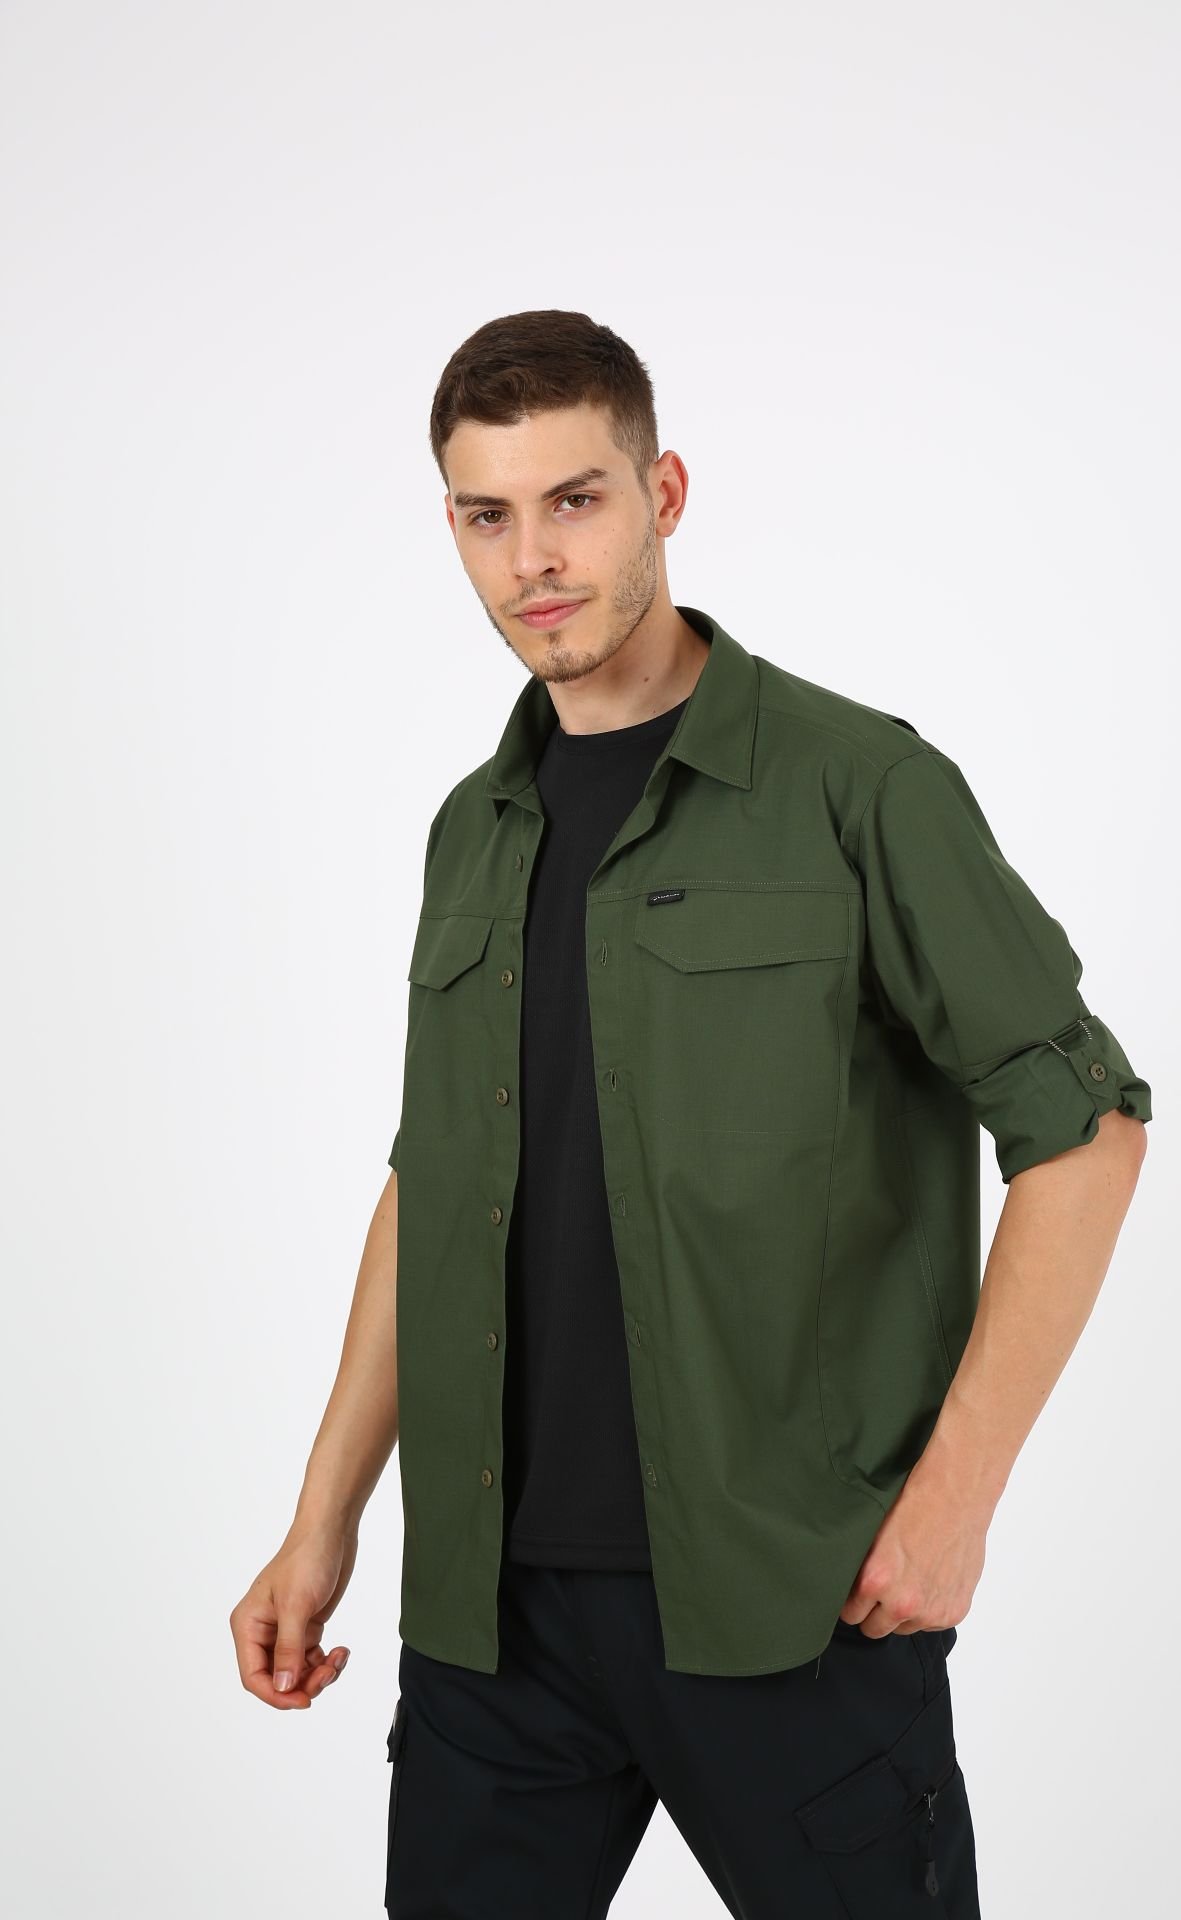 Monel Outdoor Yeşil Tactical Gömlek Taktik Giyim Ripstop Gömlek